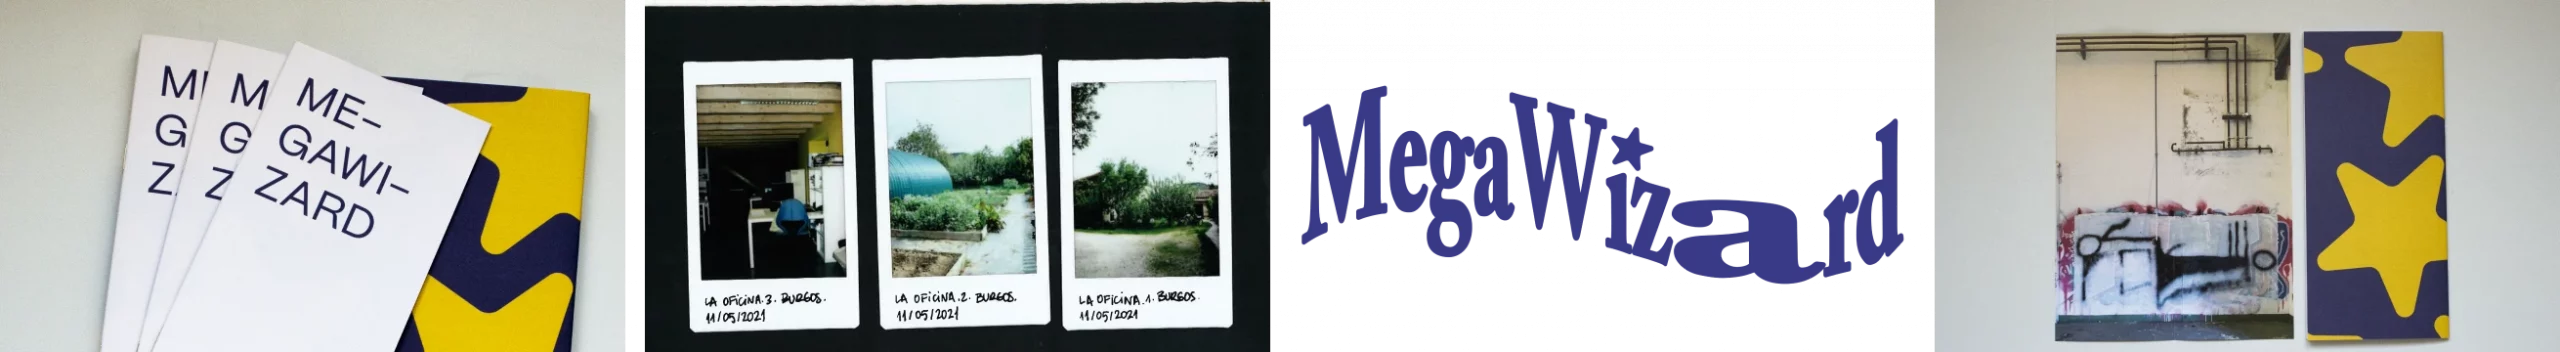 serie de imágenes de la edición impresa de megawizard, su logotipo, y tres polaroids de la oficina en la fundación oxígeno de burgos